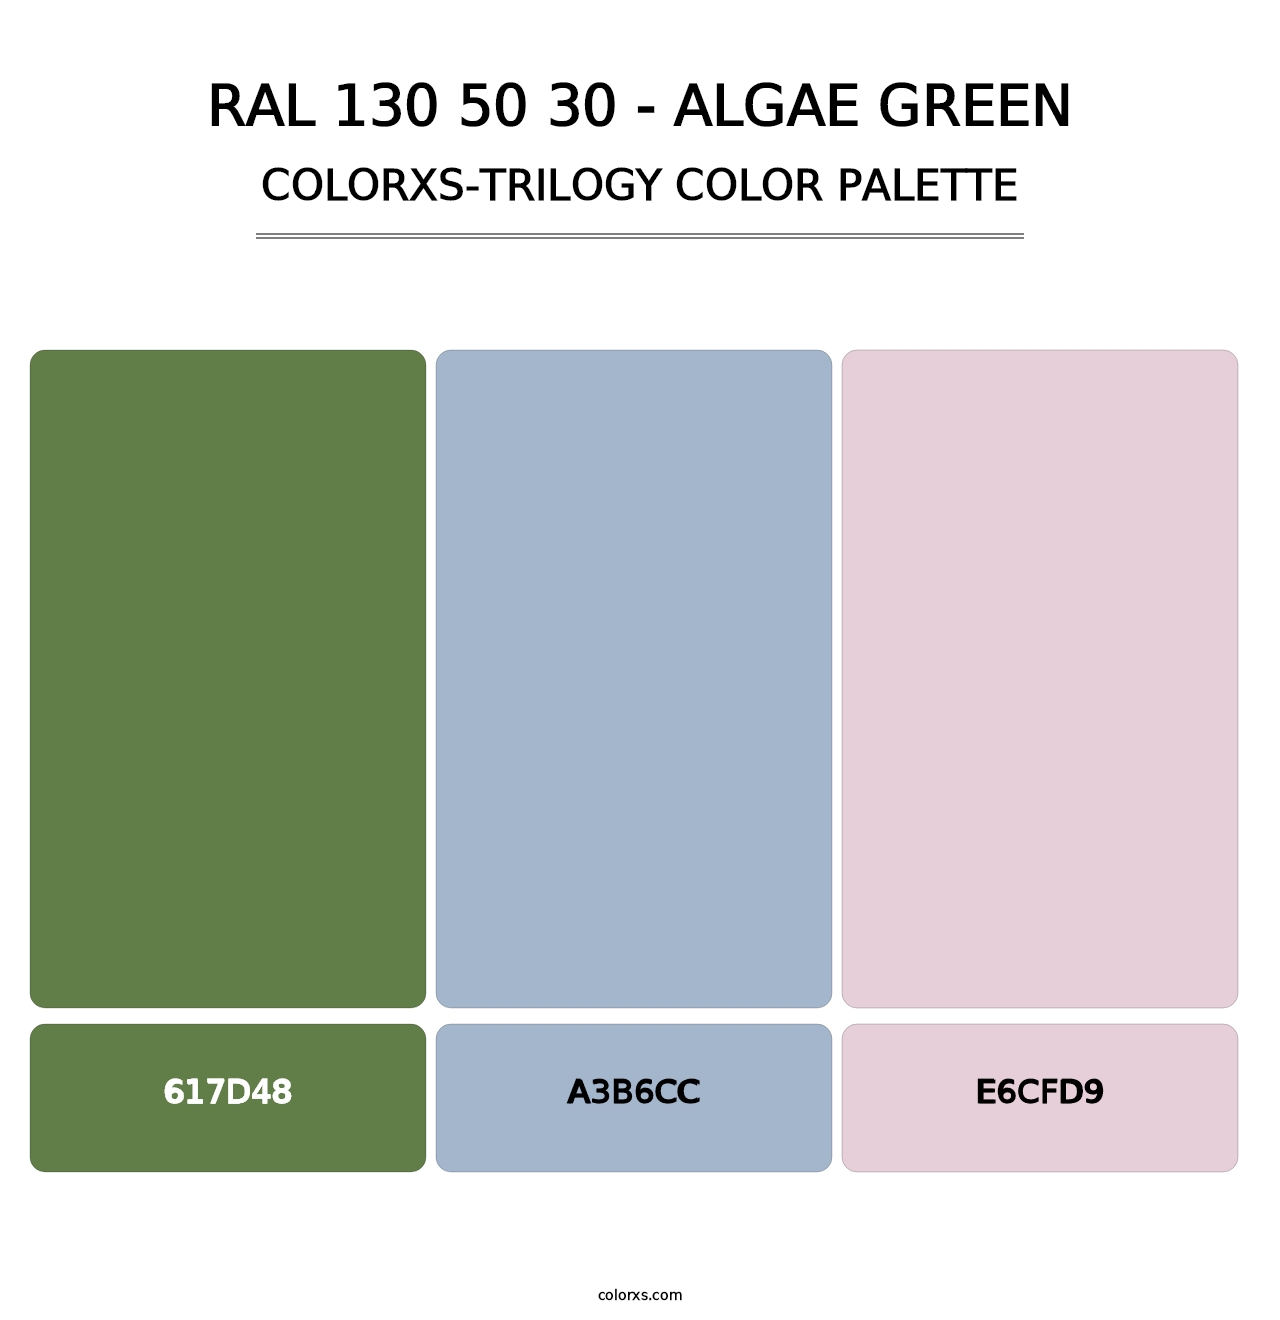 RAL 130 50 30 - Algae Green - Colorxs Trilogy Palette